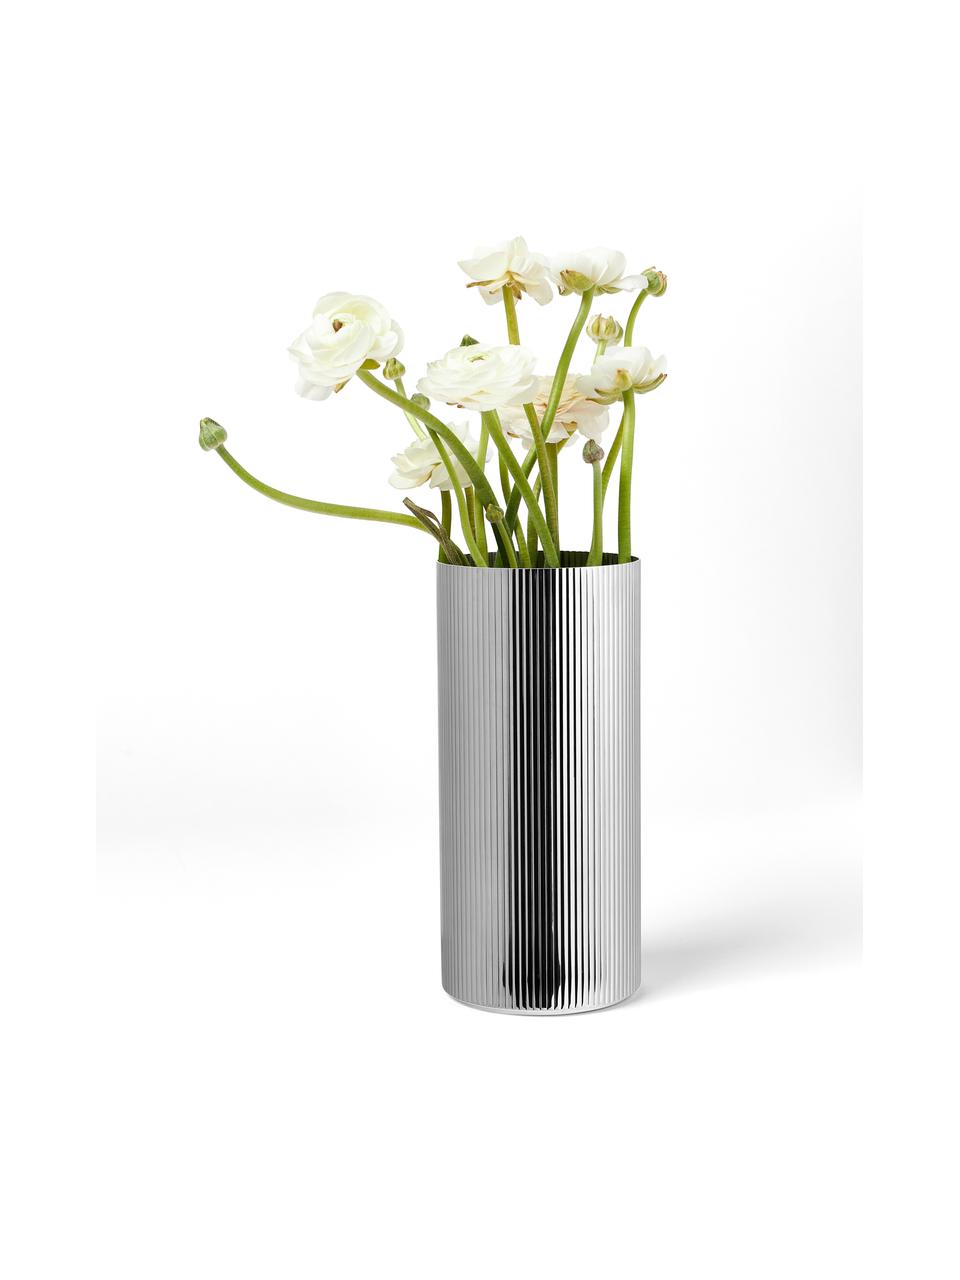 Váza z nerezové oceli s drážkovanou strukturou Bernadotte, V 26 cm, Nerezová ocel, leštěná, Stříbrná, vysoce leštěná, Ø 12 cm, V 26 cm